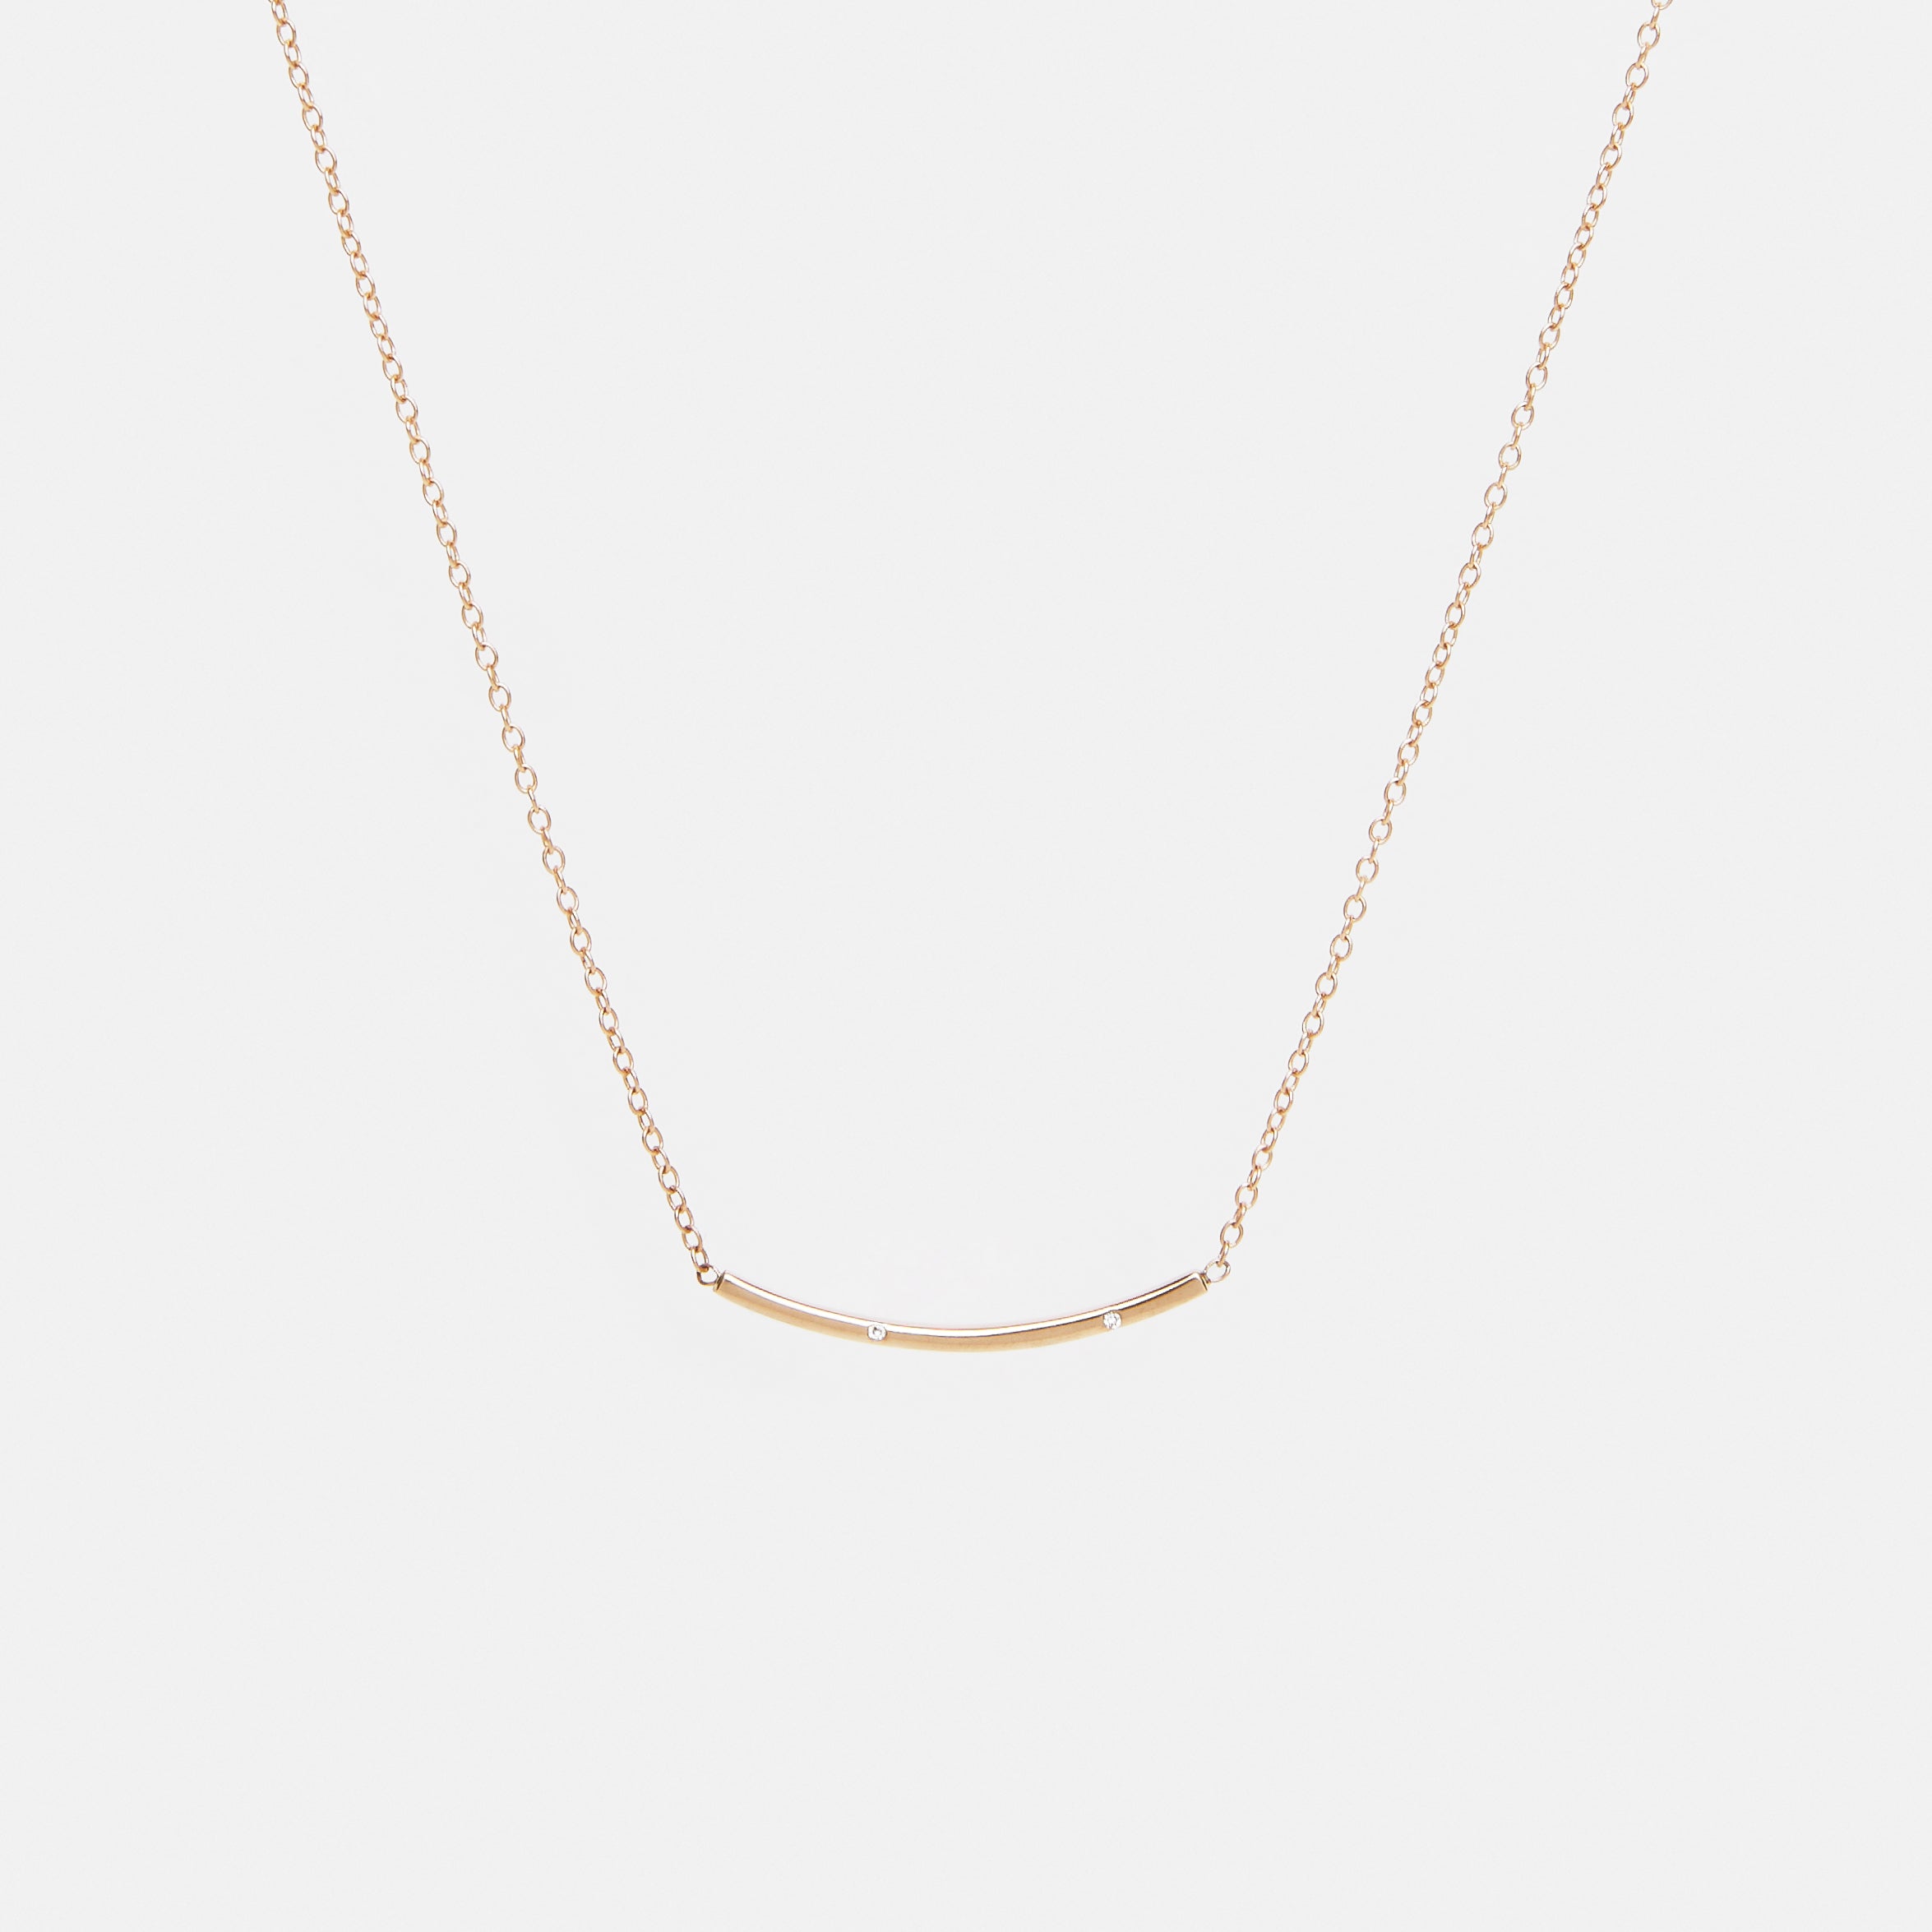 Sara Minimalist Necklace in 14k Gold set with White Diamonds By SHW Fine Jewelry NYC